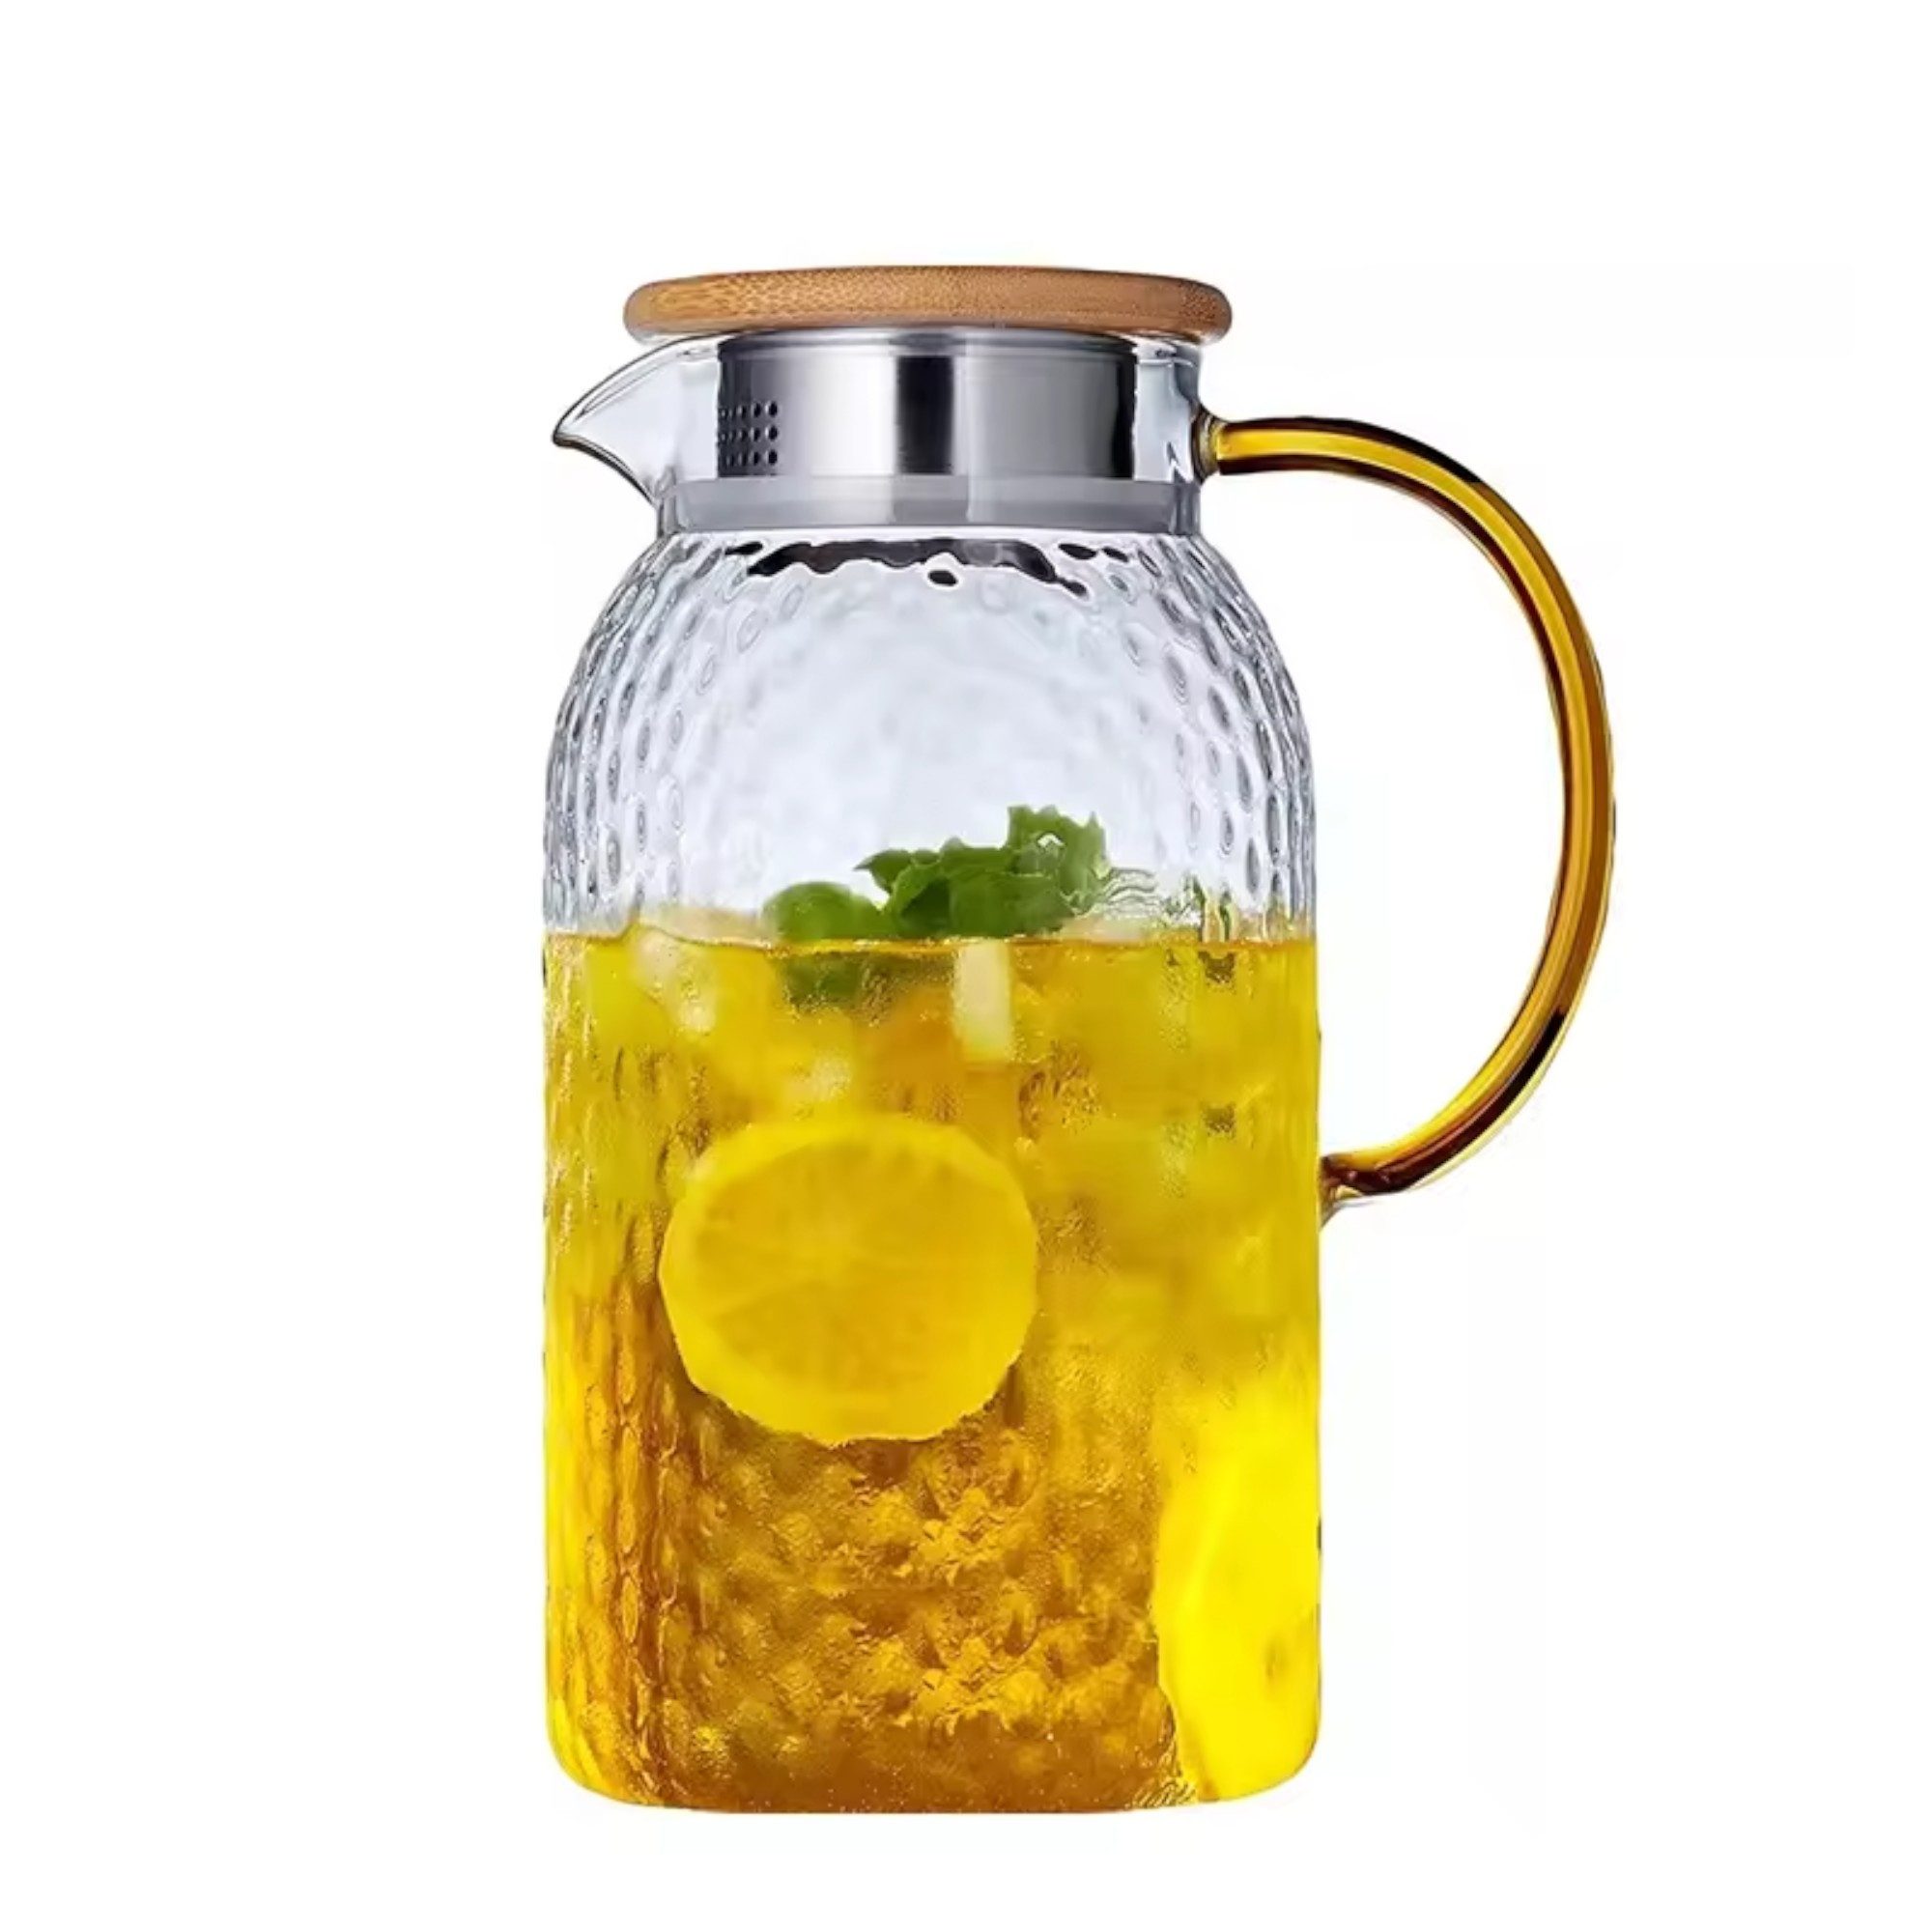 ROY Teekanne Premium 1300ml Glas-Teekanne mit Siebeinsatz, (Glaskaraffe, Teekanne Glas mit Holzdeckel), Hitzebeständige Hochborosilikat, Teekessel